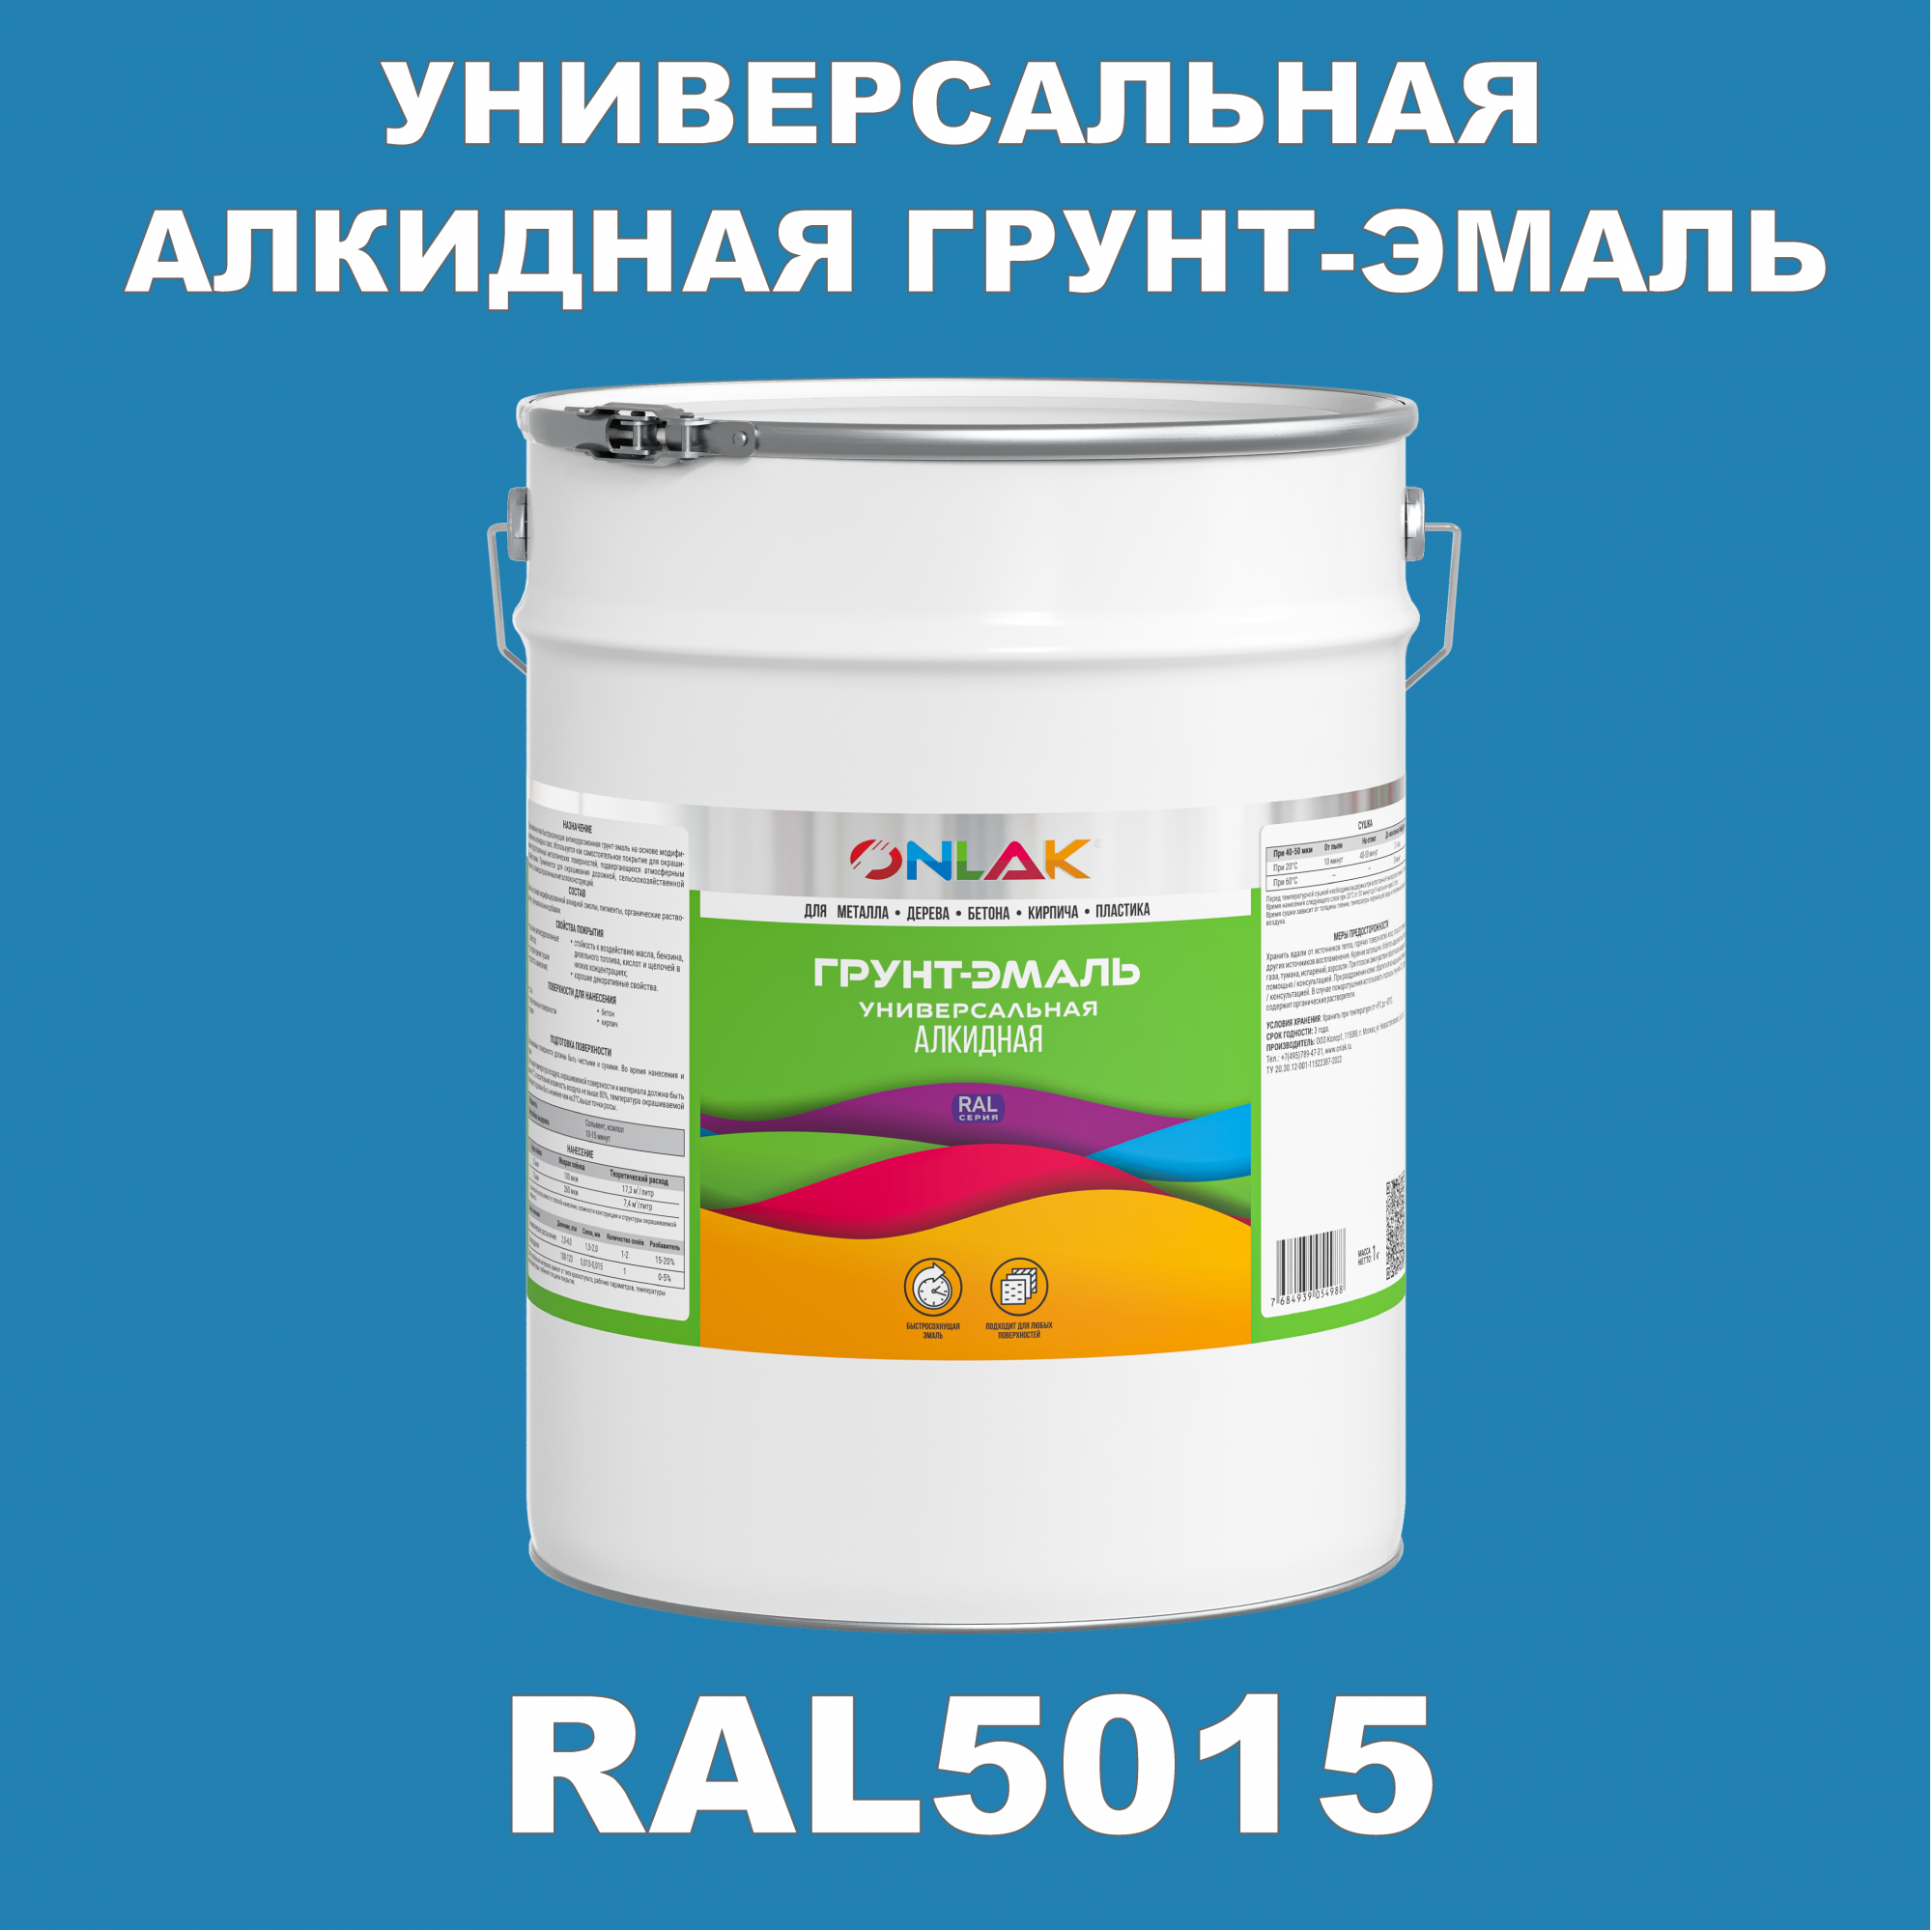 Грунт-эмаль ONLAK 1К RAL5015 антикоррозионная алкидная по металлу по ржавчине 20 кг грунт эмаль yollo по ржавчине алкидная зеленая 0 9 кг